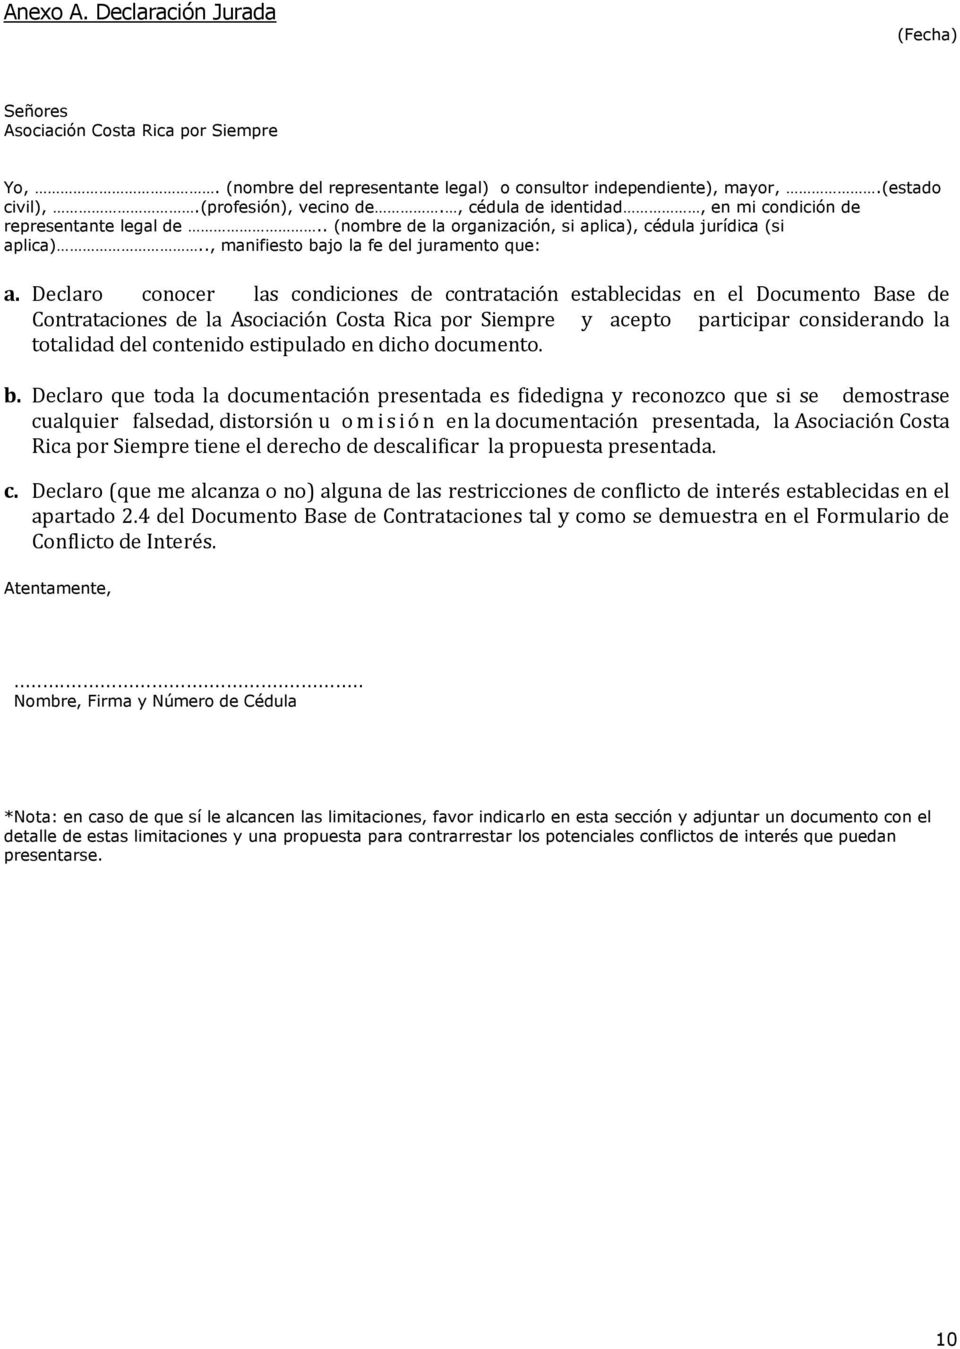 Declaro conocer las condiciones de contratación establecidas en el Documento Base de Contrataciones de la Asociación Costa Rica por Siempre y acepto participar considerando la totalidad del contenido